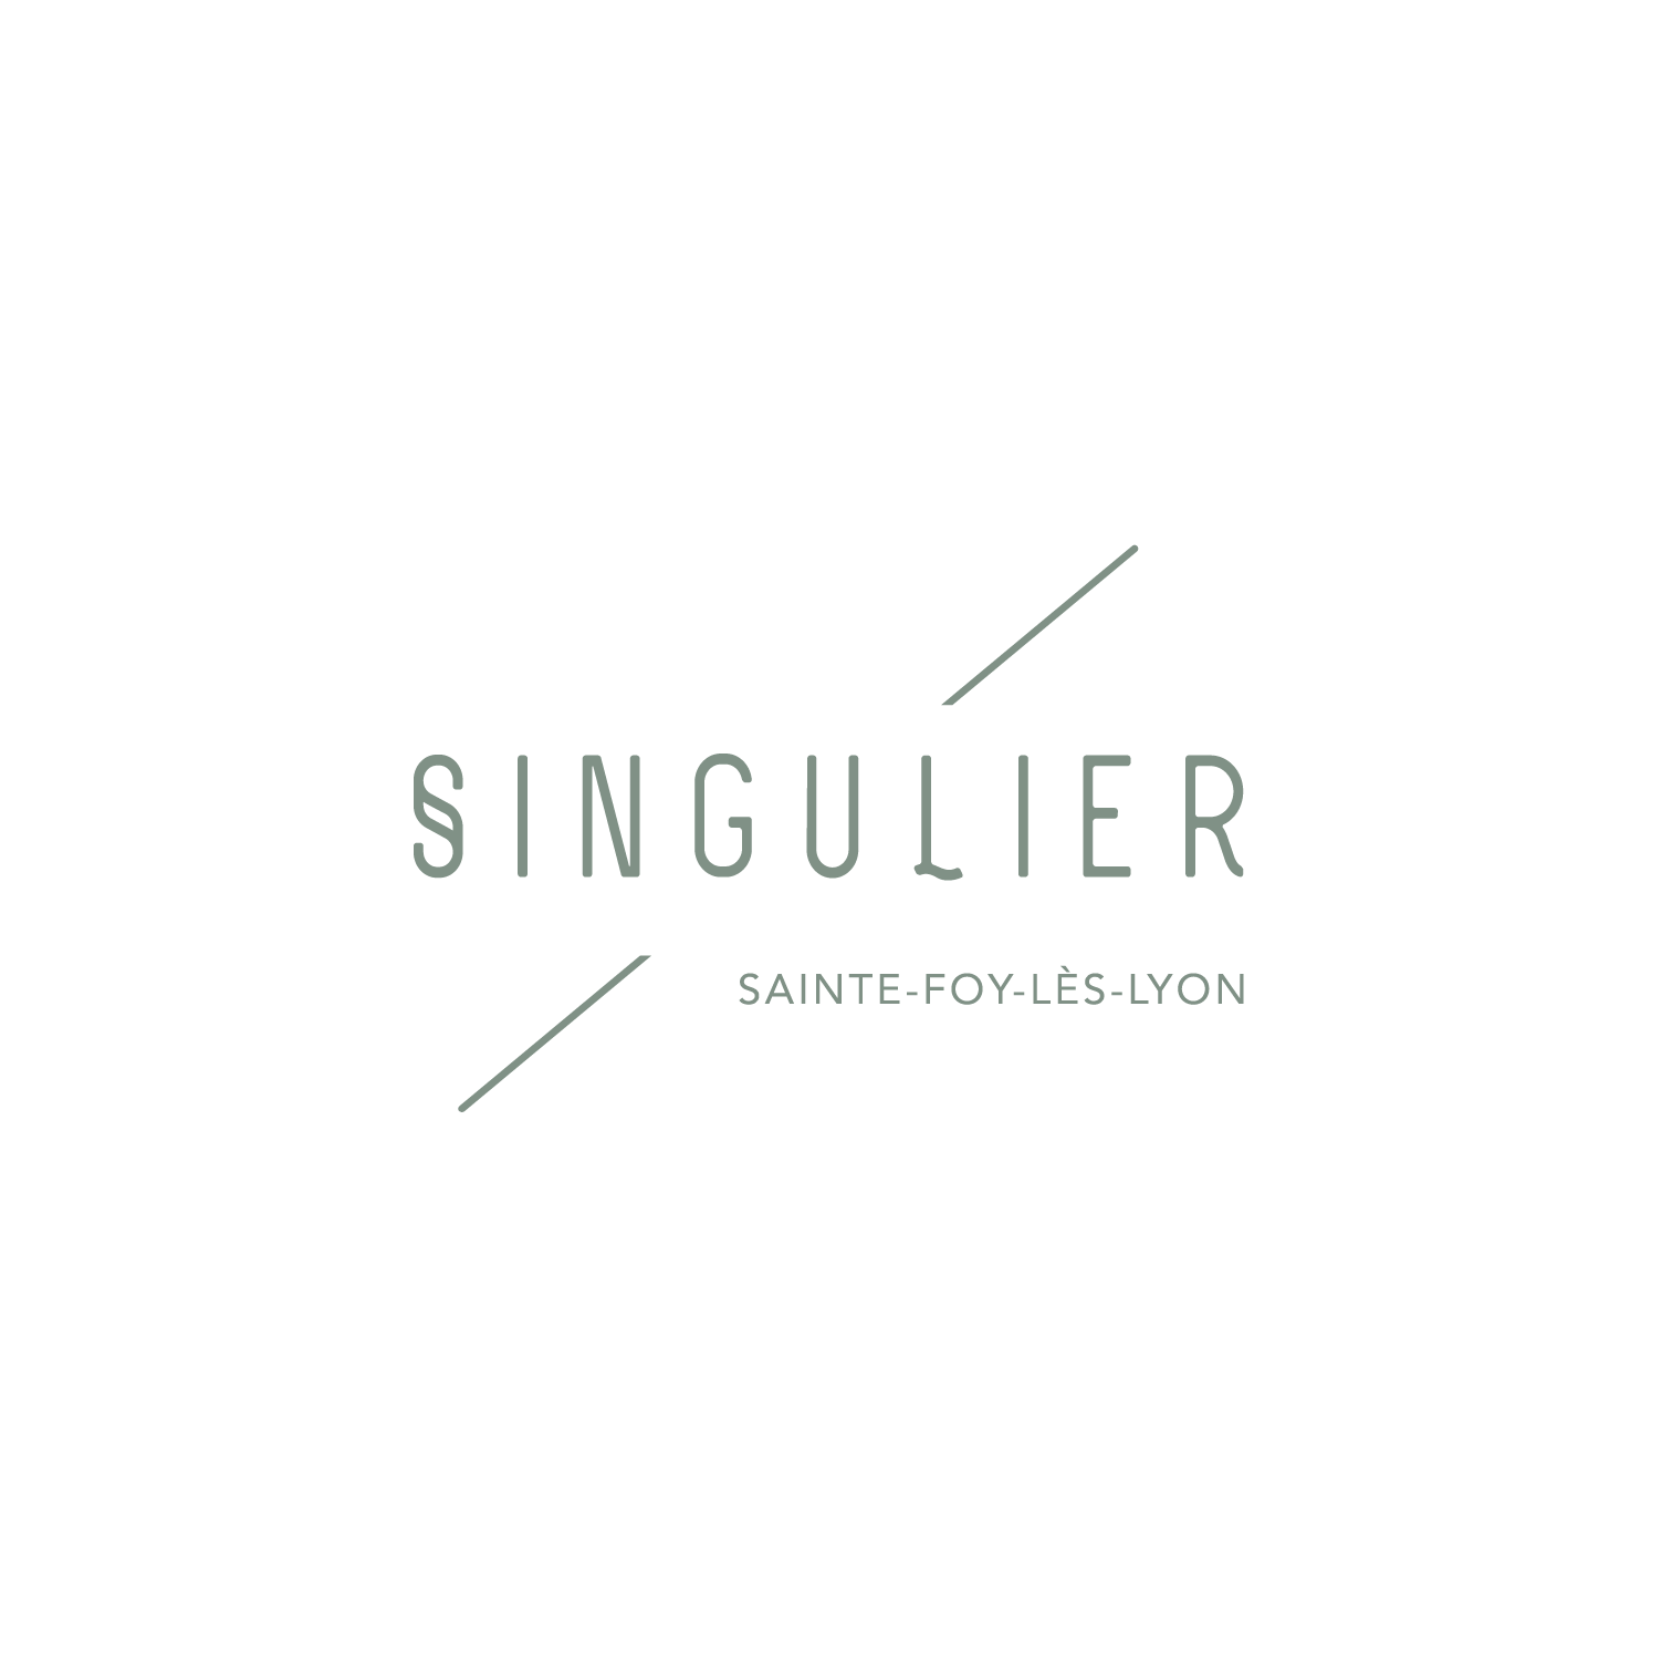 Programme immobilier Sainte-Foy-Lès-Lyon Singulier